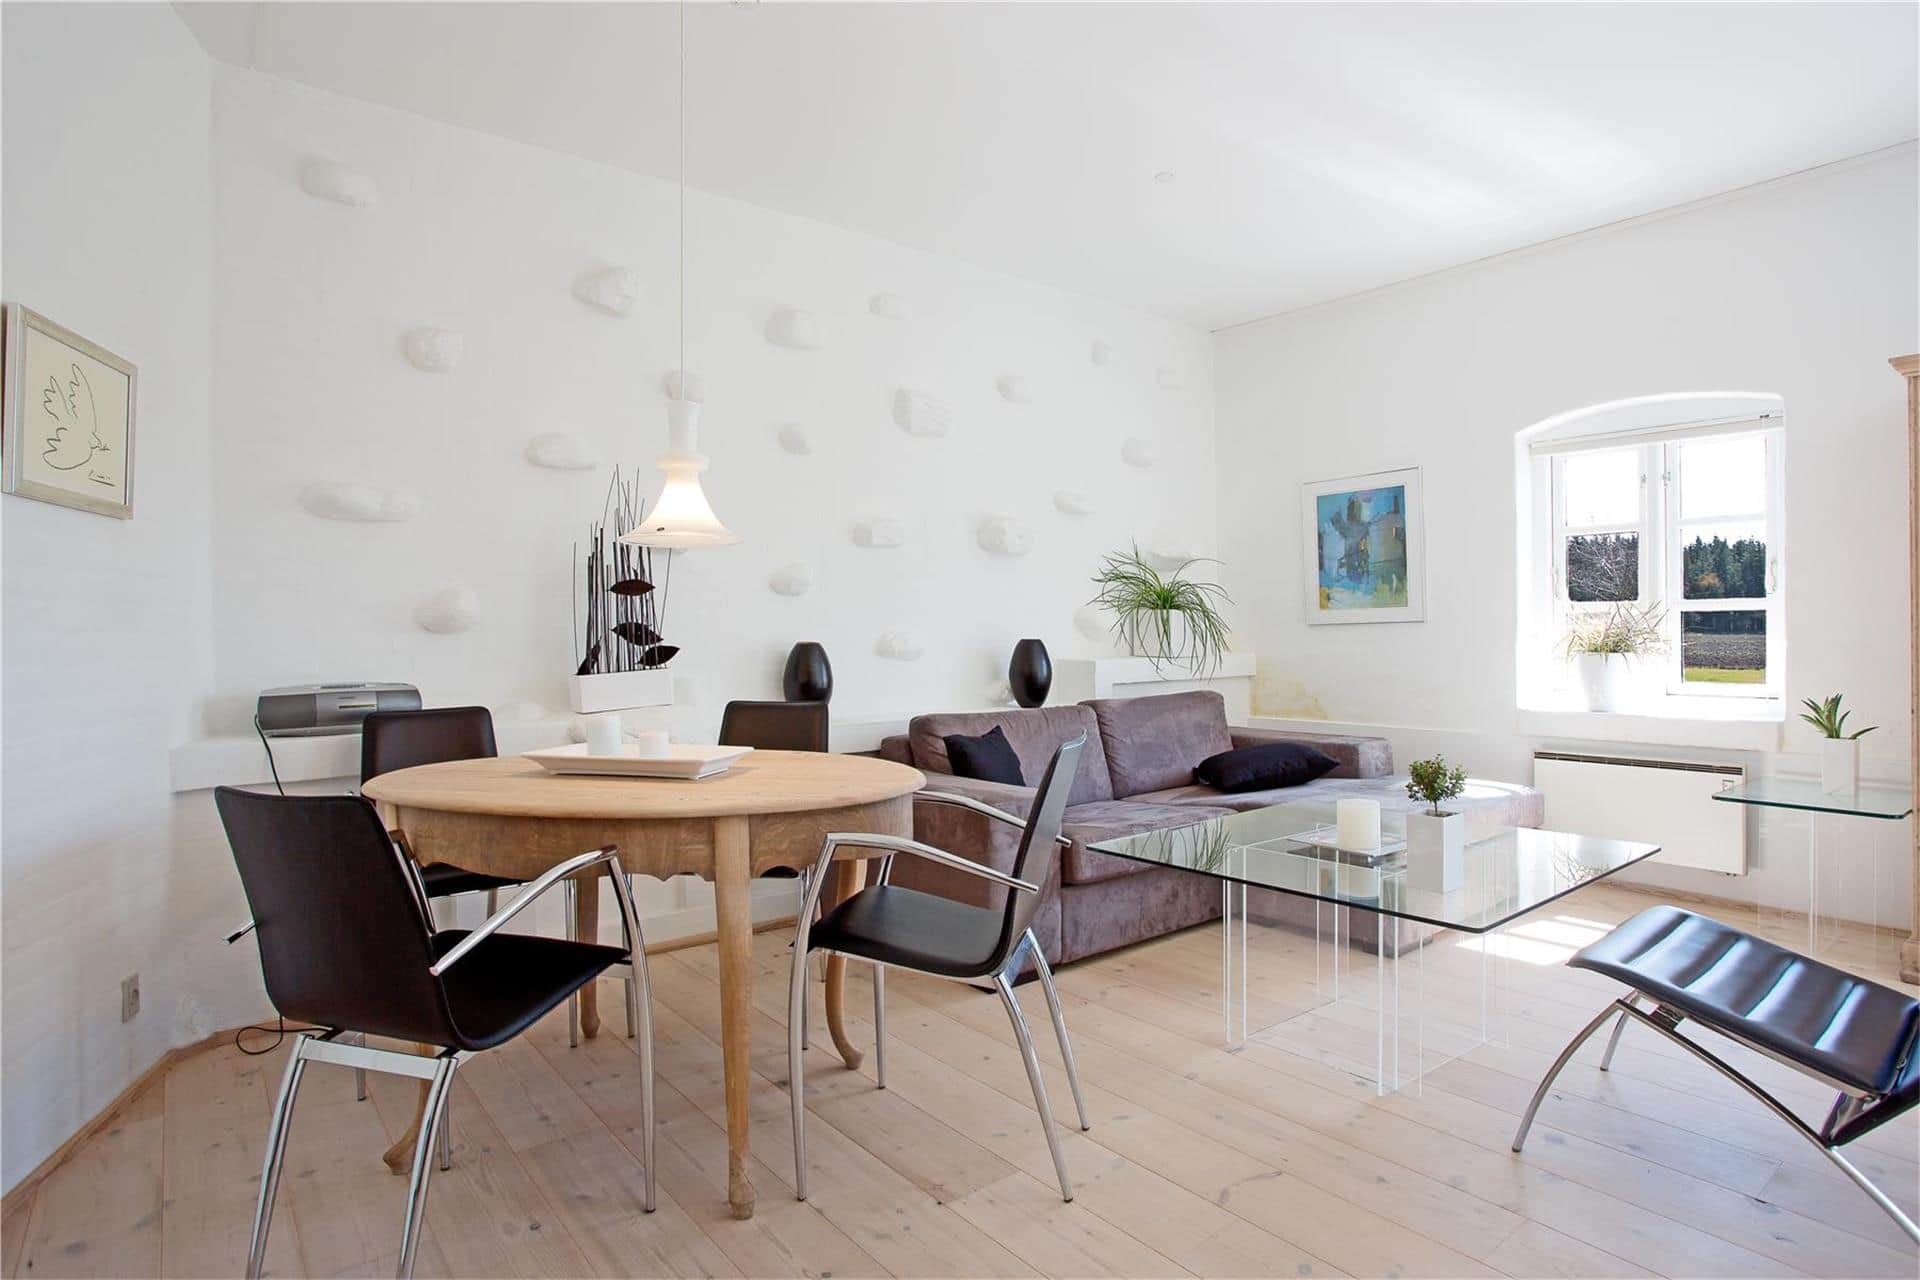 Livingroom 1 Image 3-125 Holiday-home 1100, Strandvejen 31, DK - 6855 Outrup